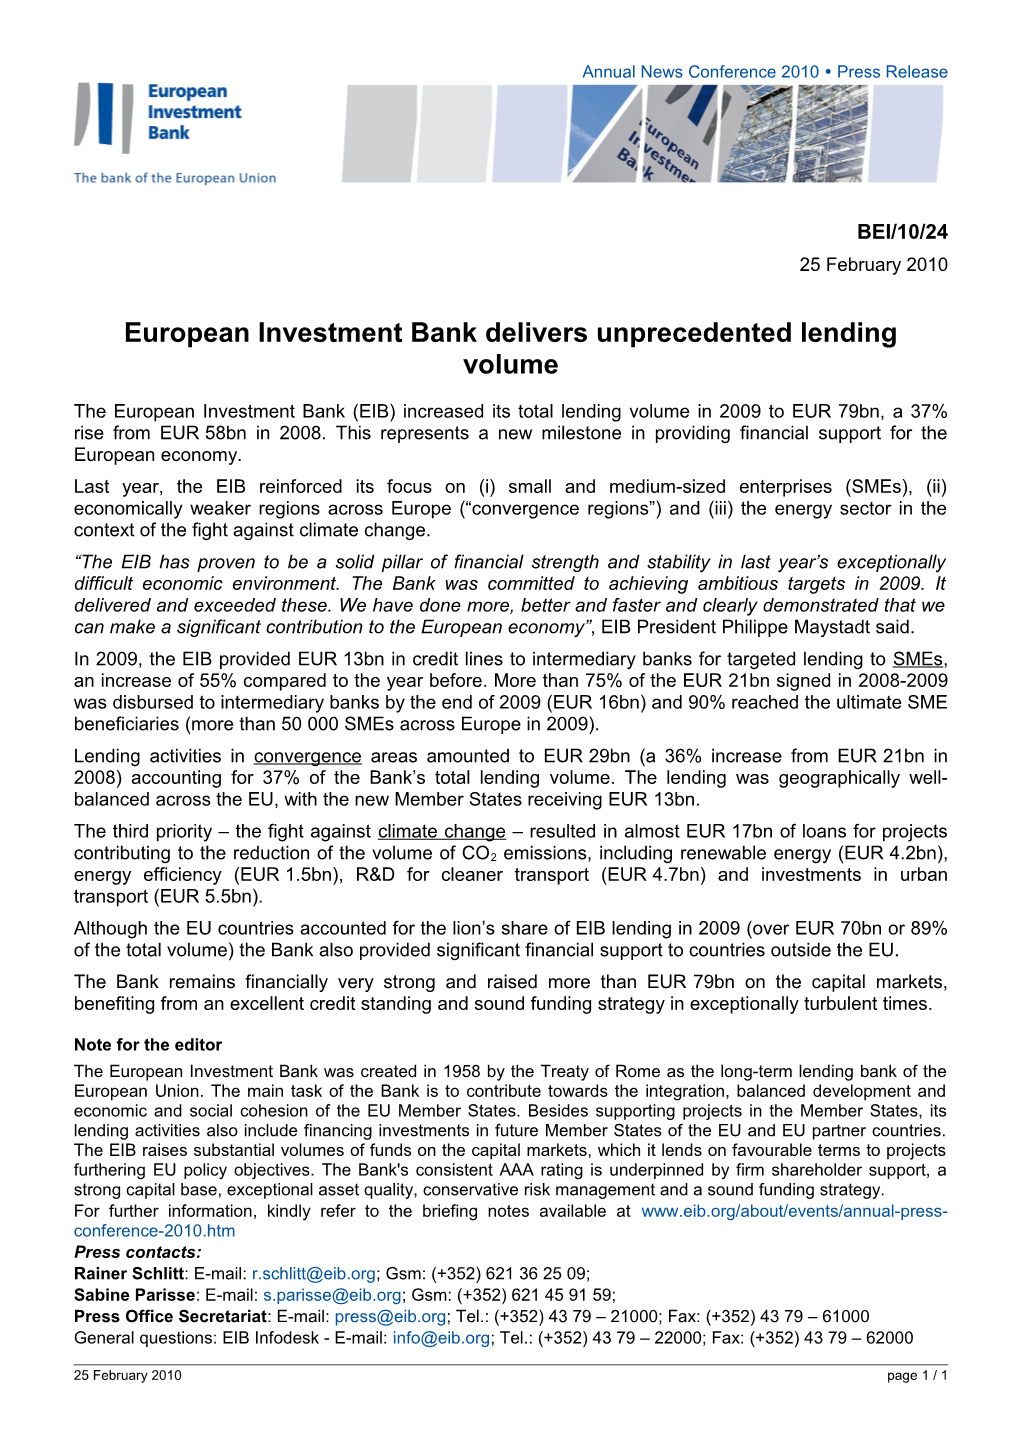 European Investment Bank Delivers Unprecedented Lending Volume